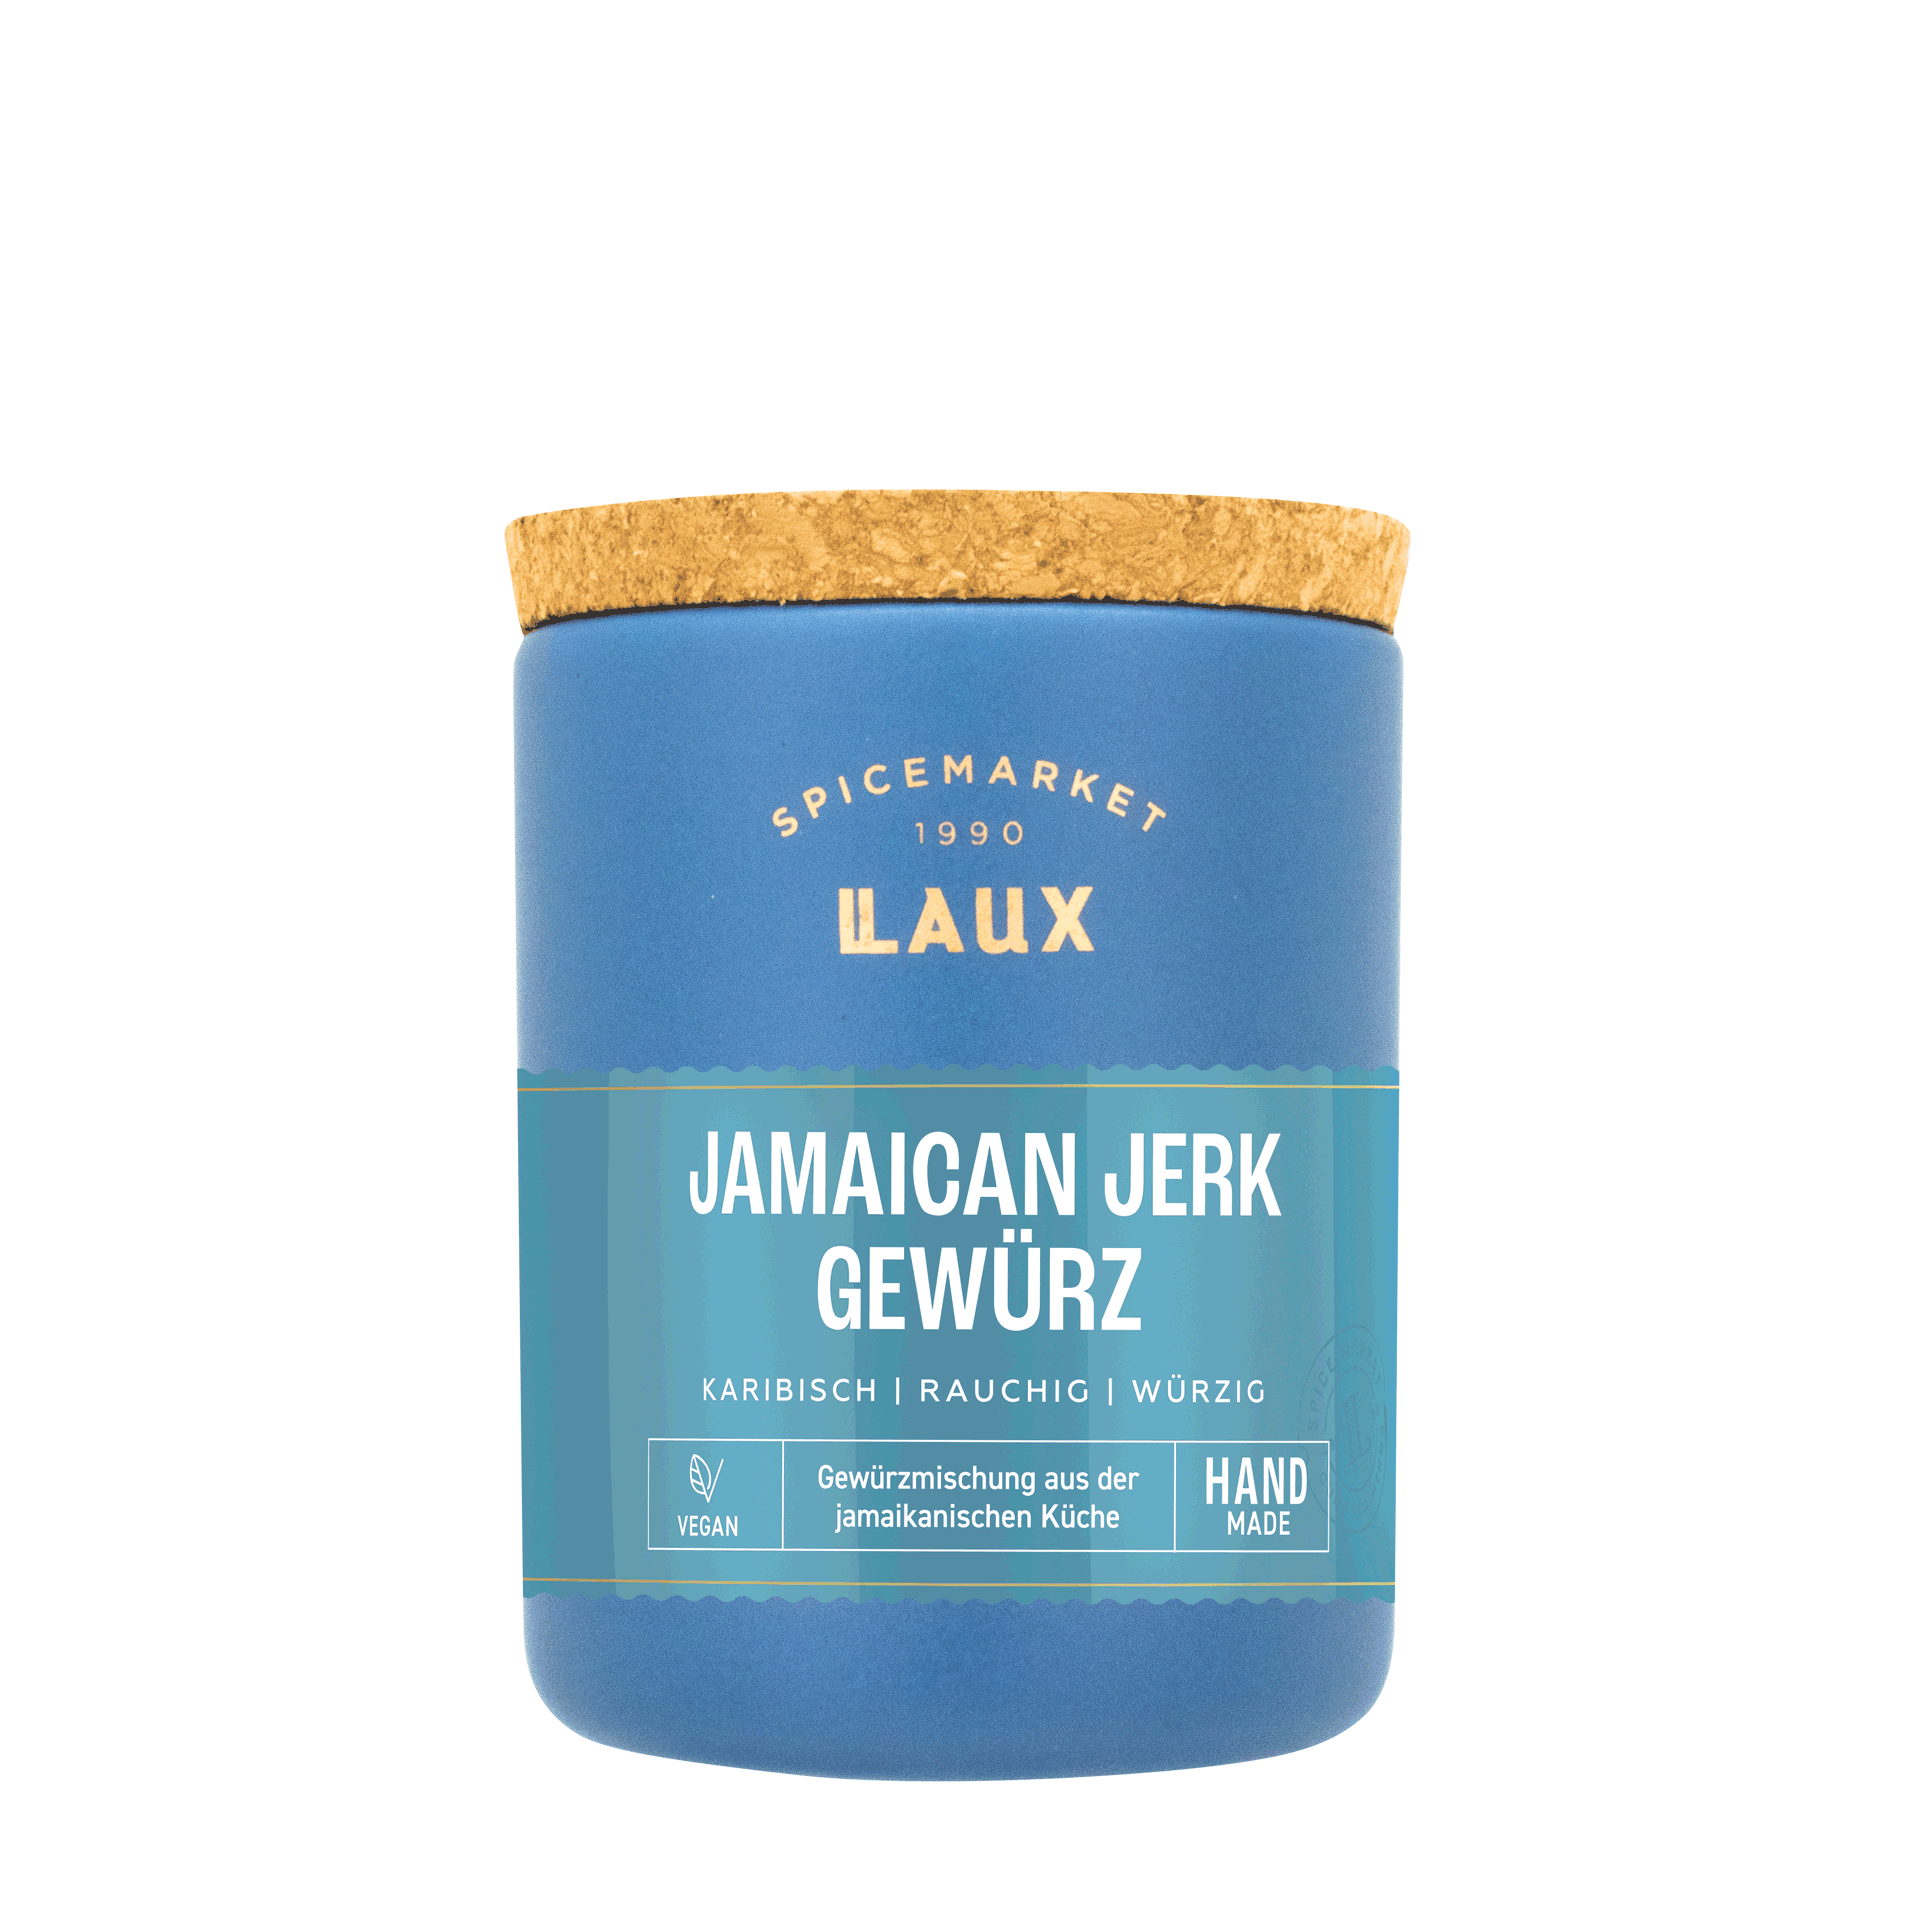 Jamaican Jerk Gewürz im Keramiktopf